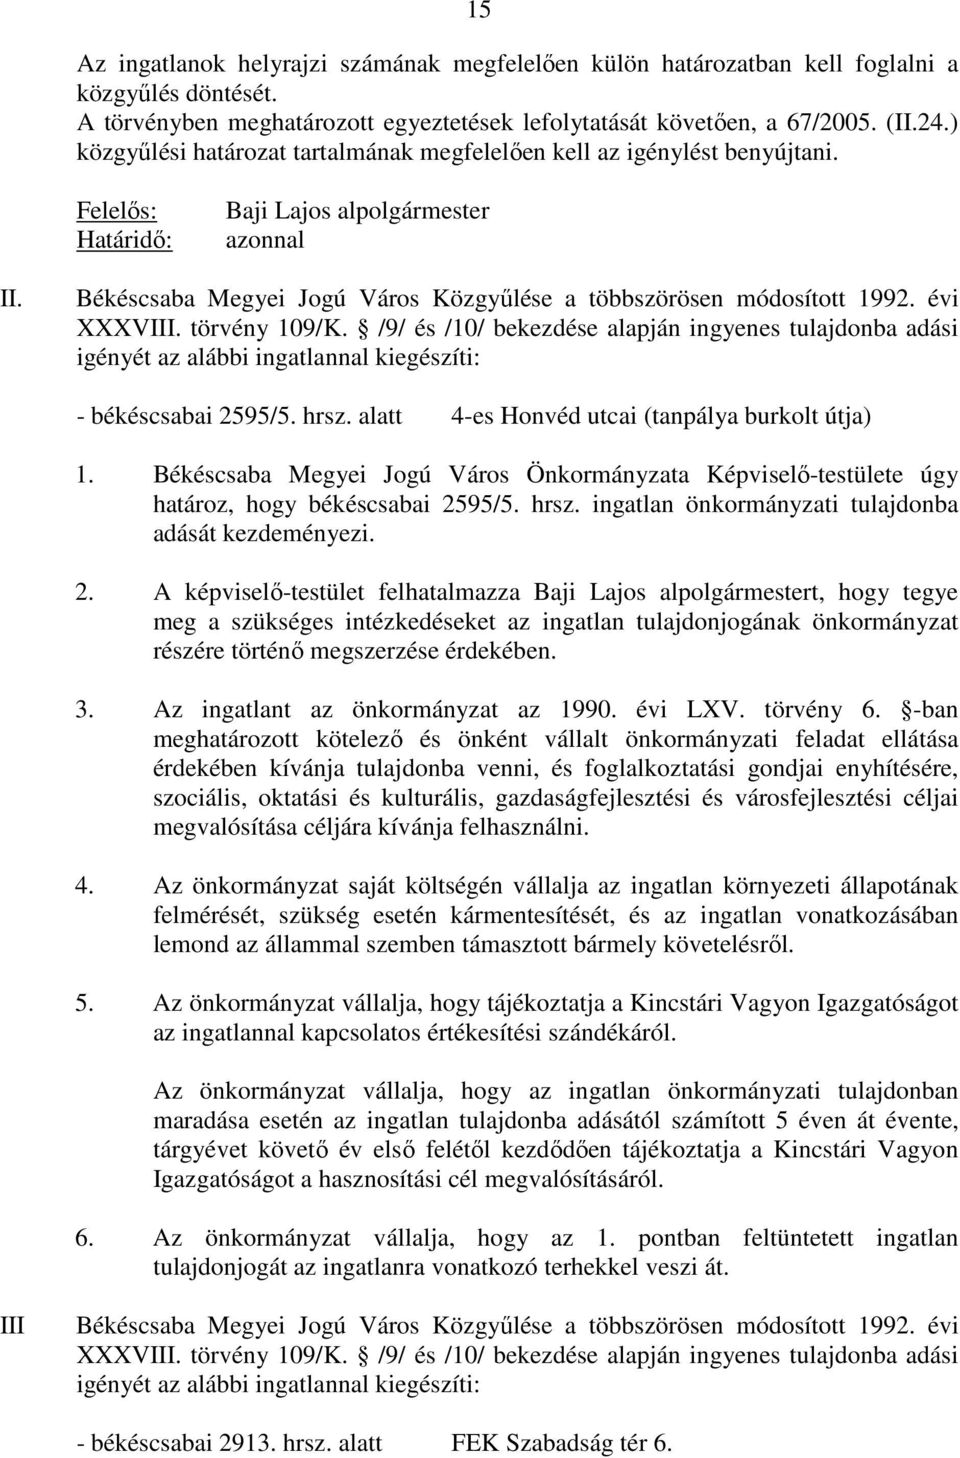 Békéscsaba Megyei Jogú Város Közgyőlése a többszörösen módosított 1992. évi XXXVIII. törvény 109/K.